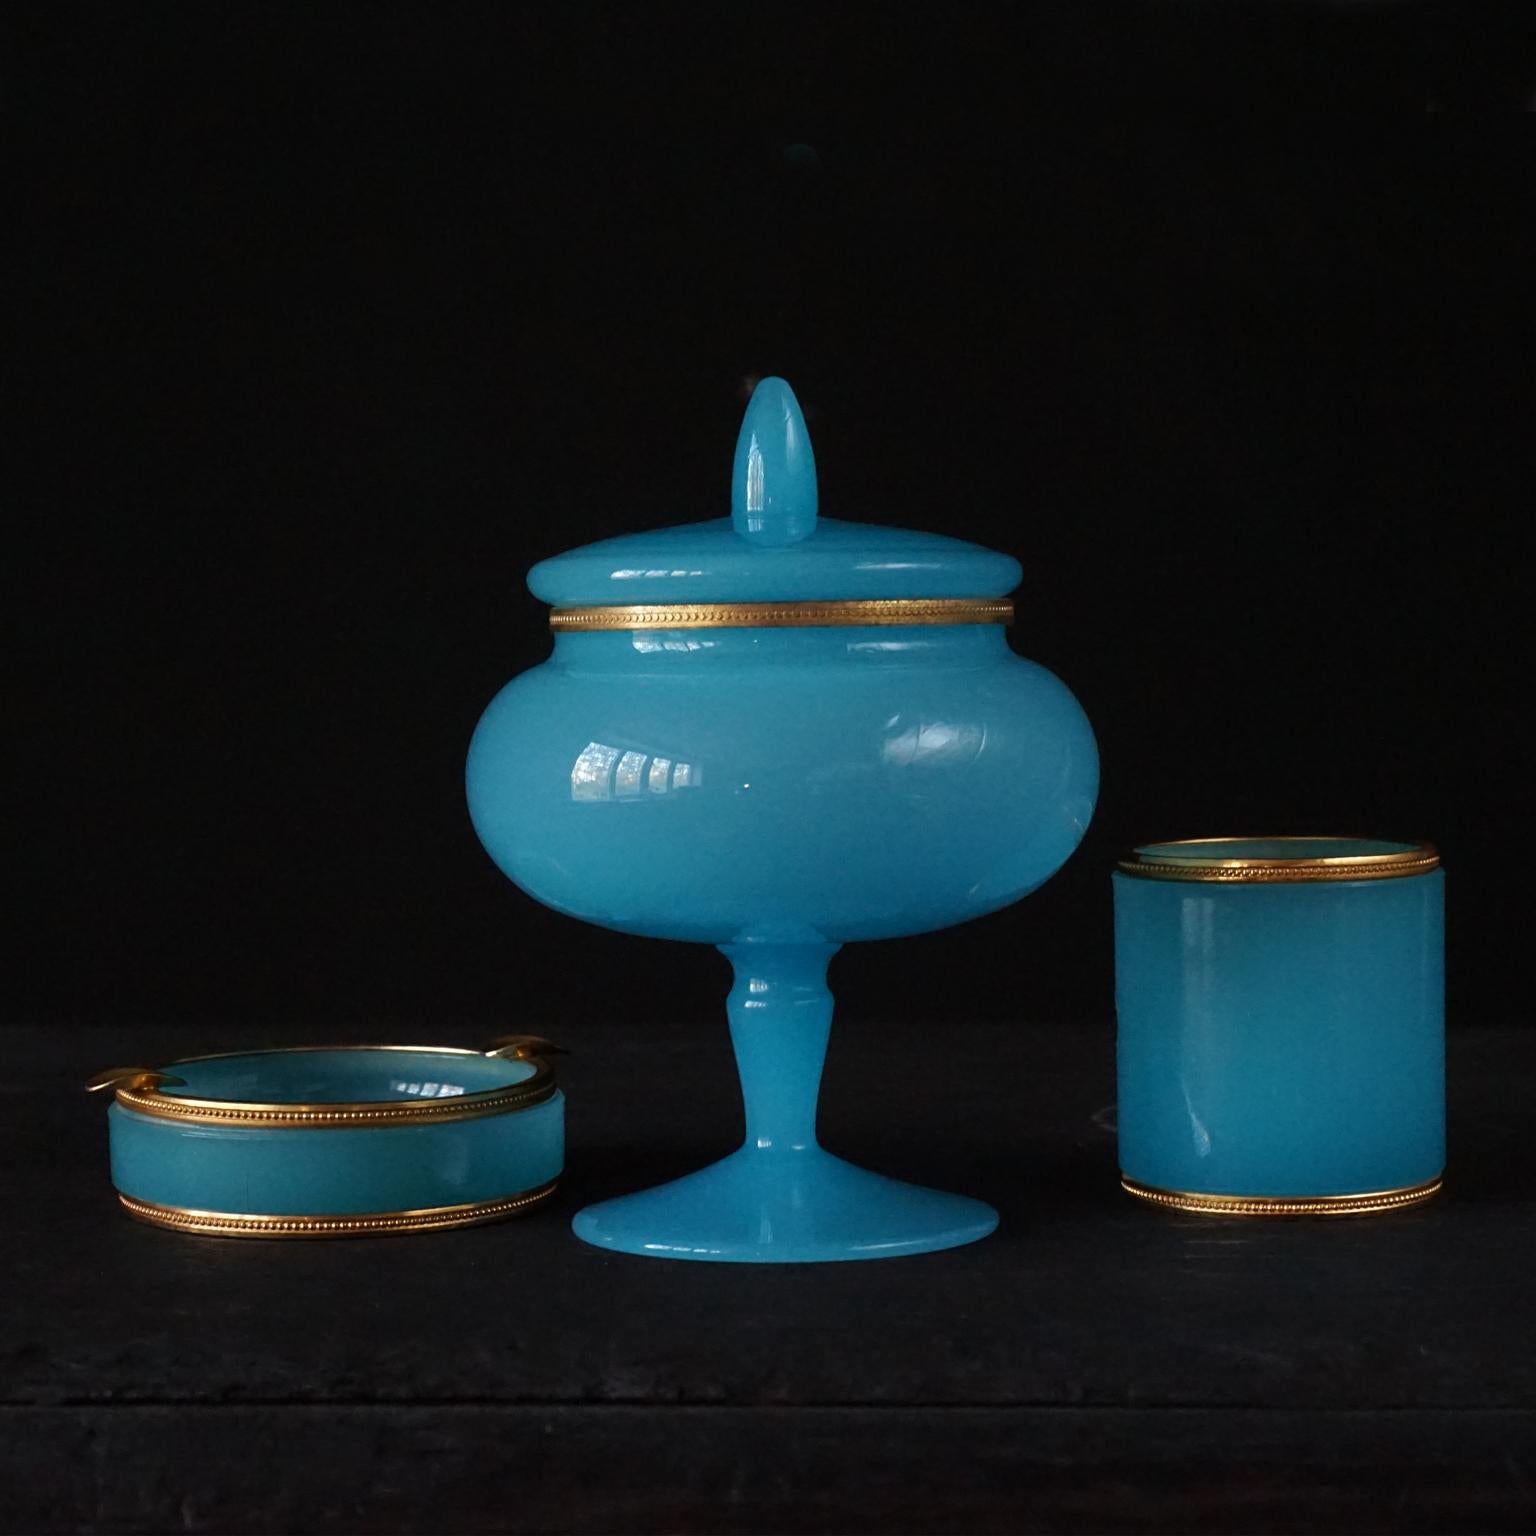 Ensemble de trois articles en verre opalin bleu des années 1950. Fabriqué en Italie 
Le verre laiteux bleu vif, opalin ou doublé est lourd et épais, tous les articles ont une monture ou un rebord décoratif en laiton doré.

L'ensemble se compose